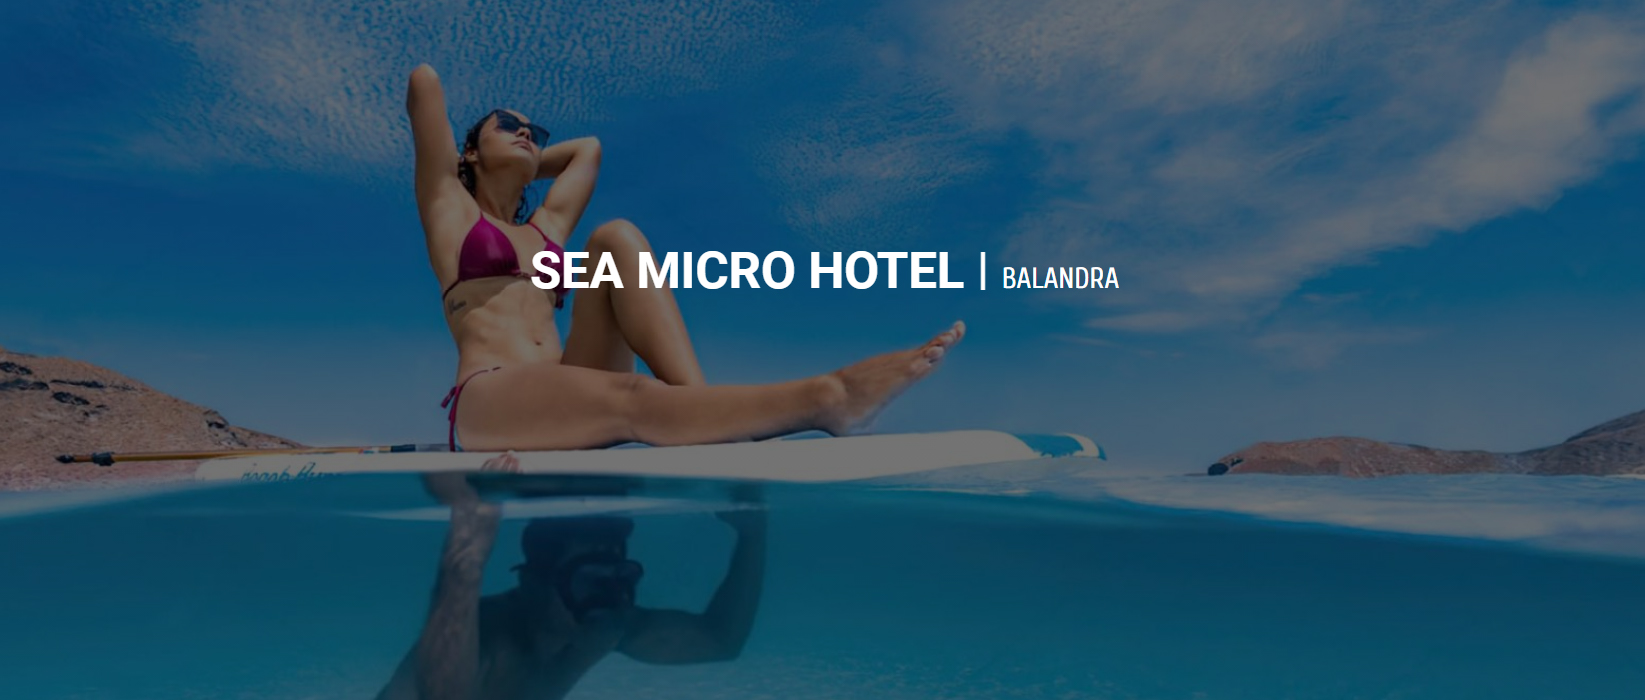 巴兰德拉海洋微型酒店设计竞赛